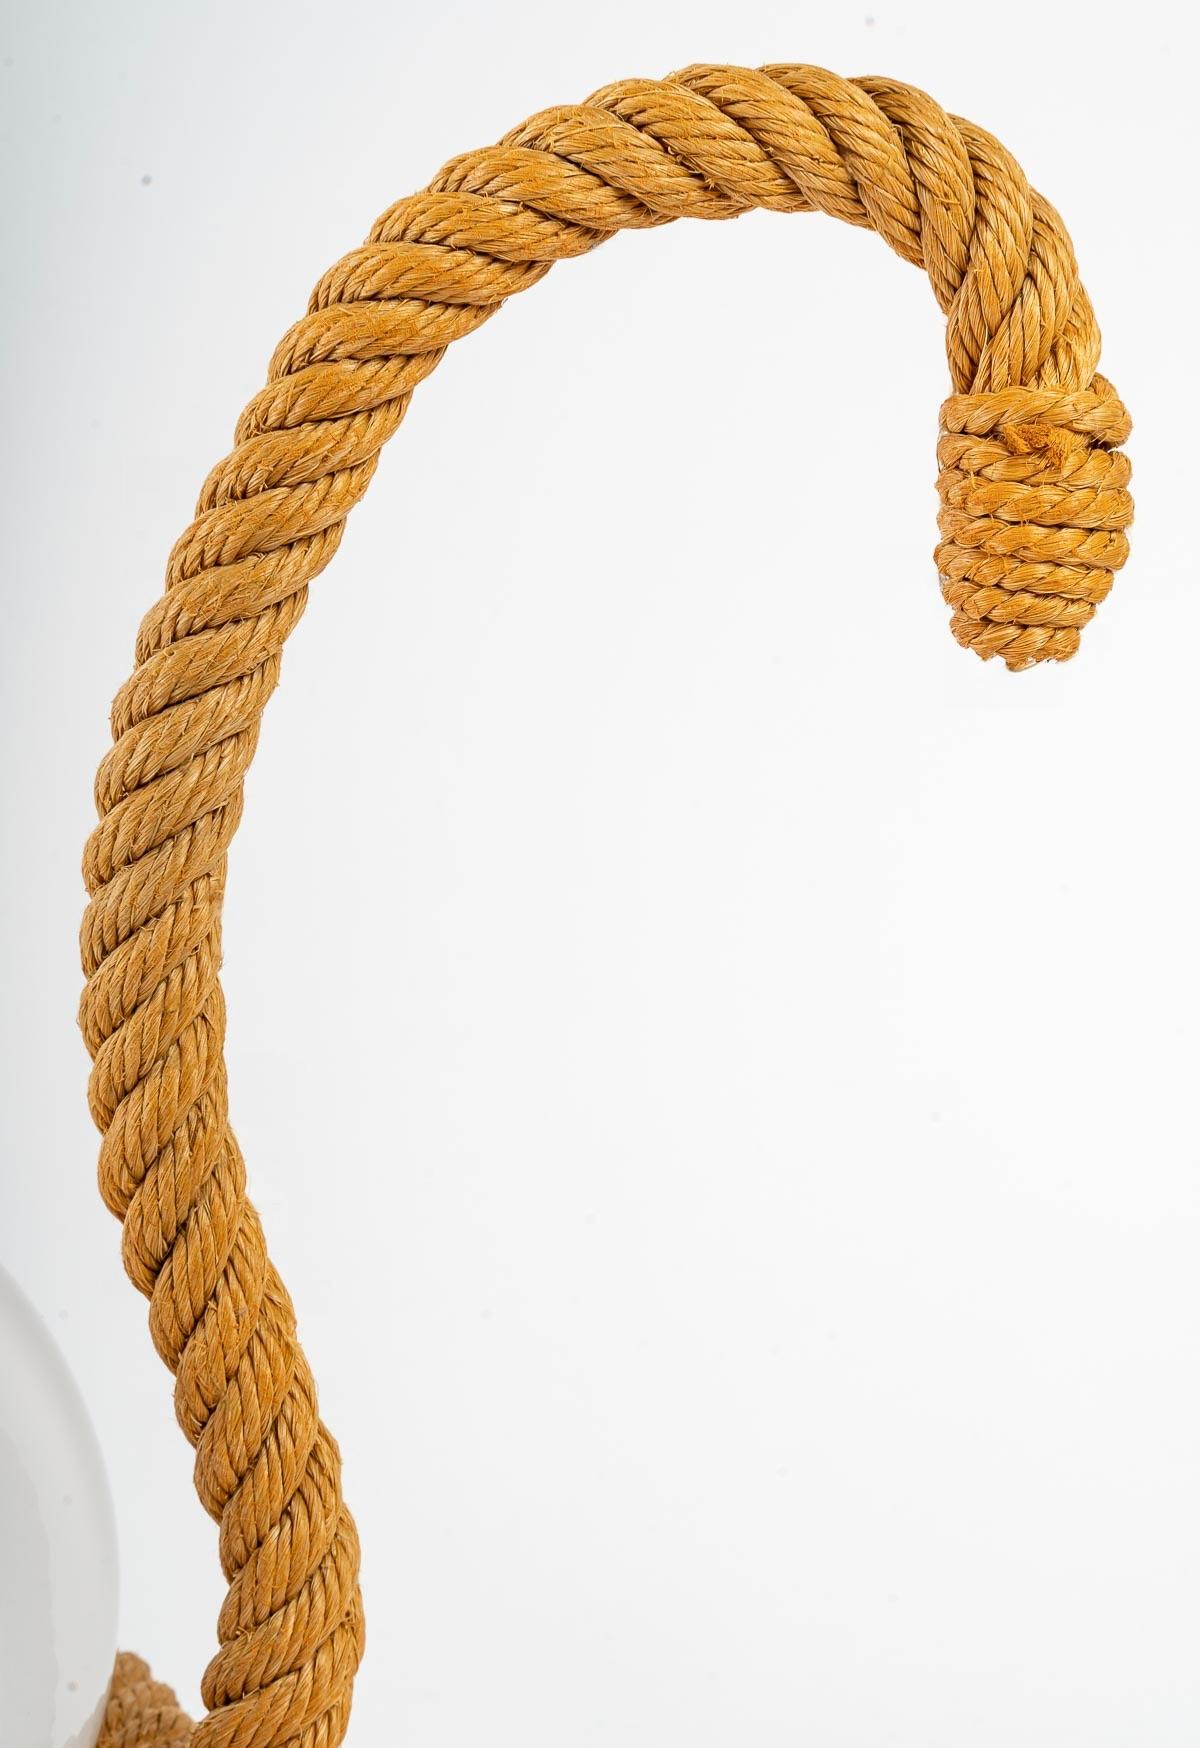 Le cygne d'Adrien Audoux et Frida Minet.
Composé d'une base ronde en corde sur laquelle est posée une opaline en forme de boule maintenue par une autre corde circulaire placée à mi-hauteur, il représente le corps du cygne.
Sur la base de la lampe,